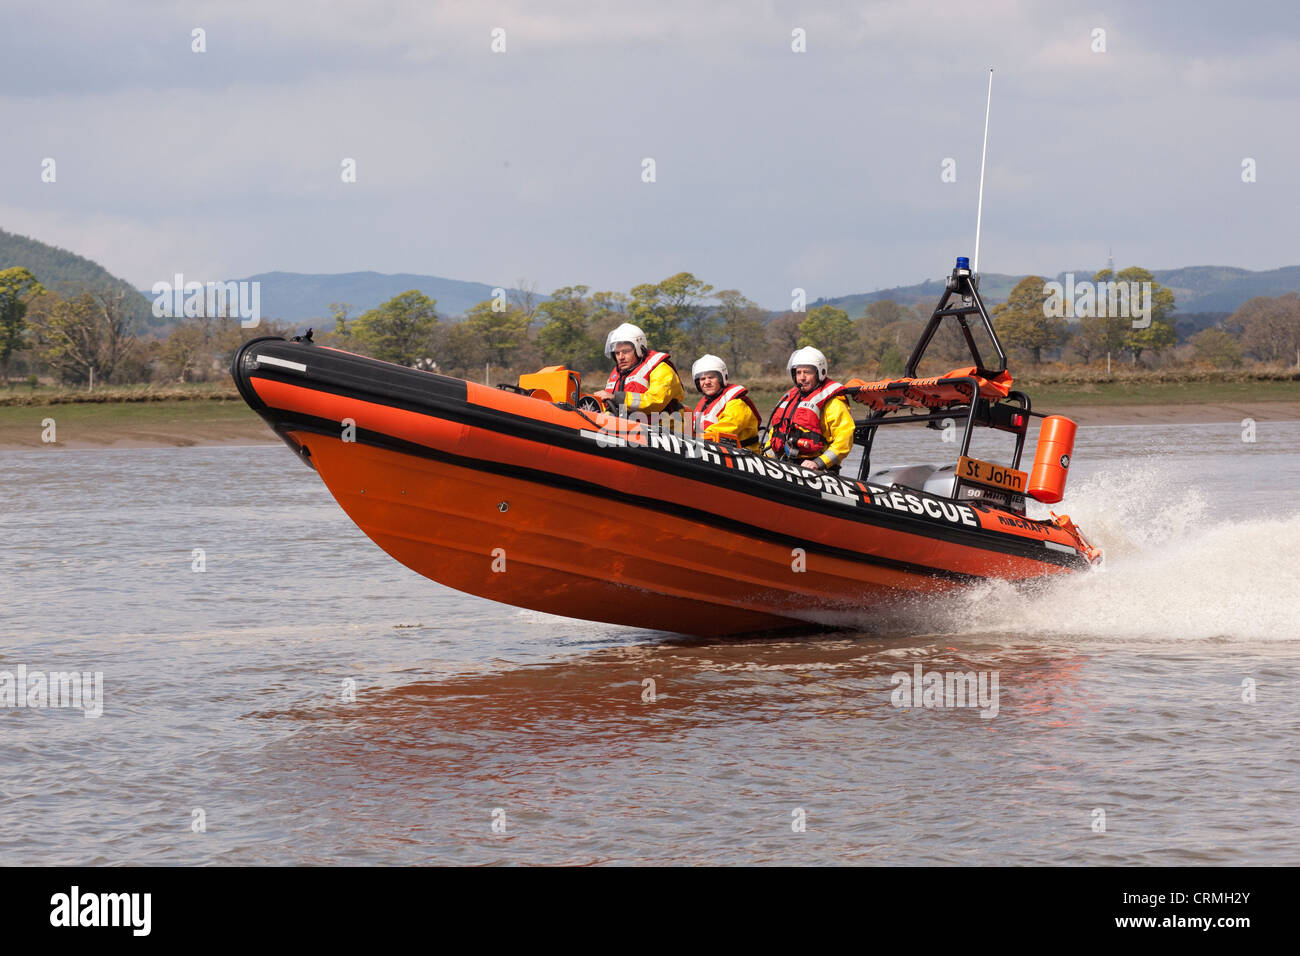 Bateau gonflable rigide de sauvetage côtier lifeboat Nith indépendants pratiquant seulement des Glencaple dans l'estuaire de la rivière Nith, UK Banque D'Images